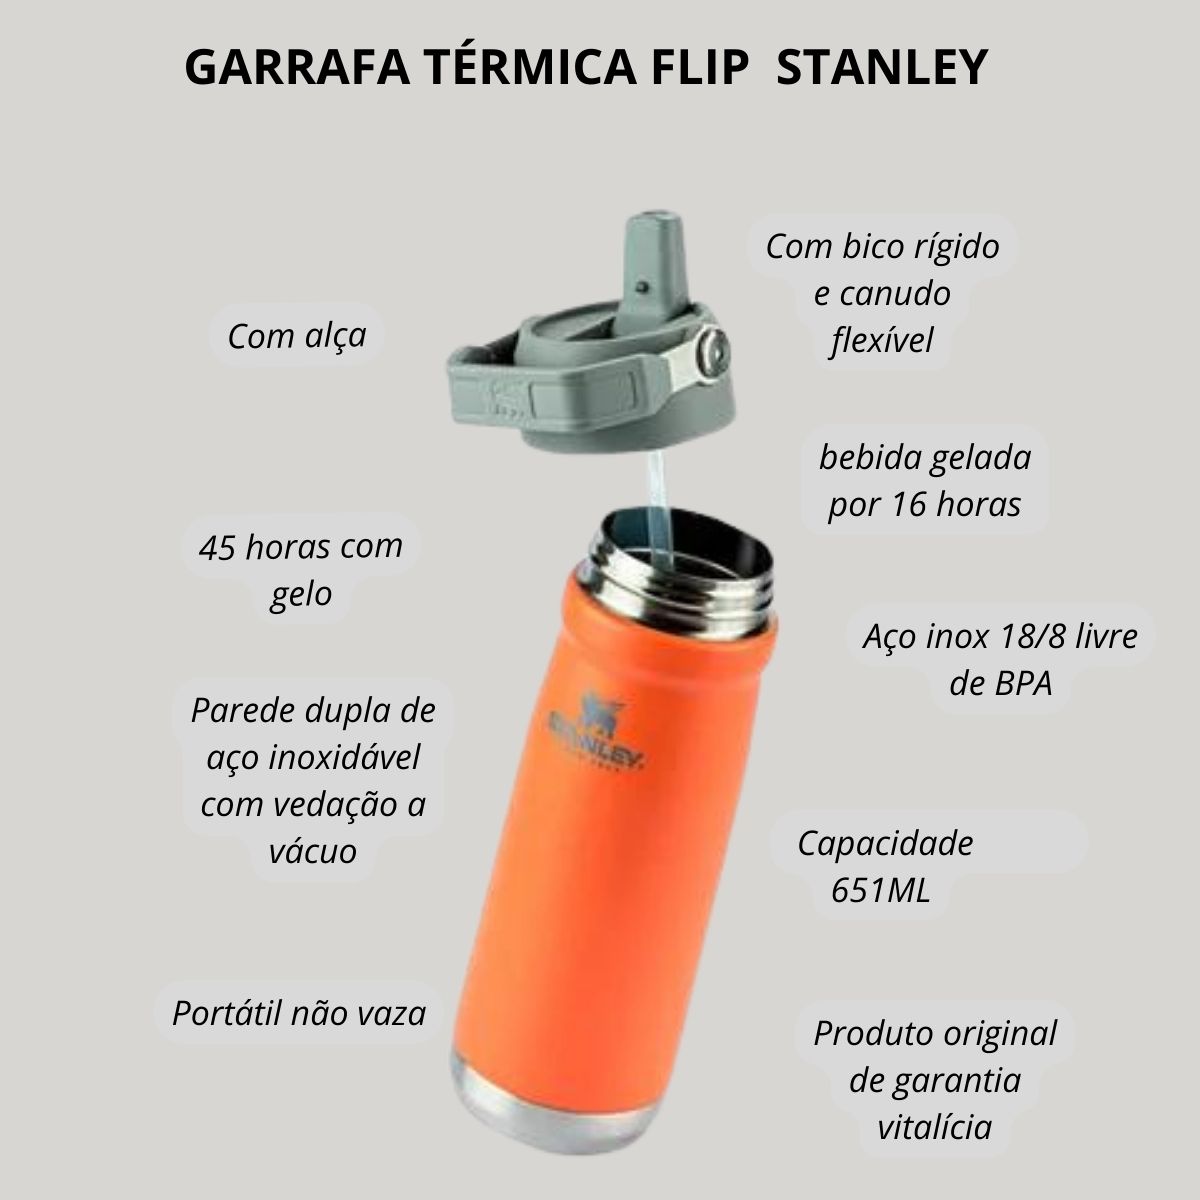 Garrafa Térmica Flip Stanley 651 ml